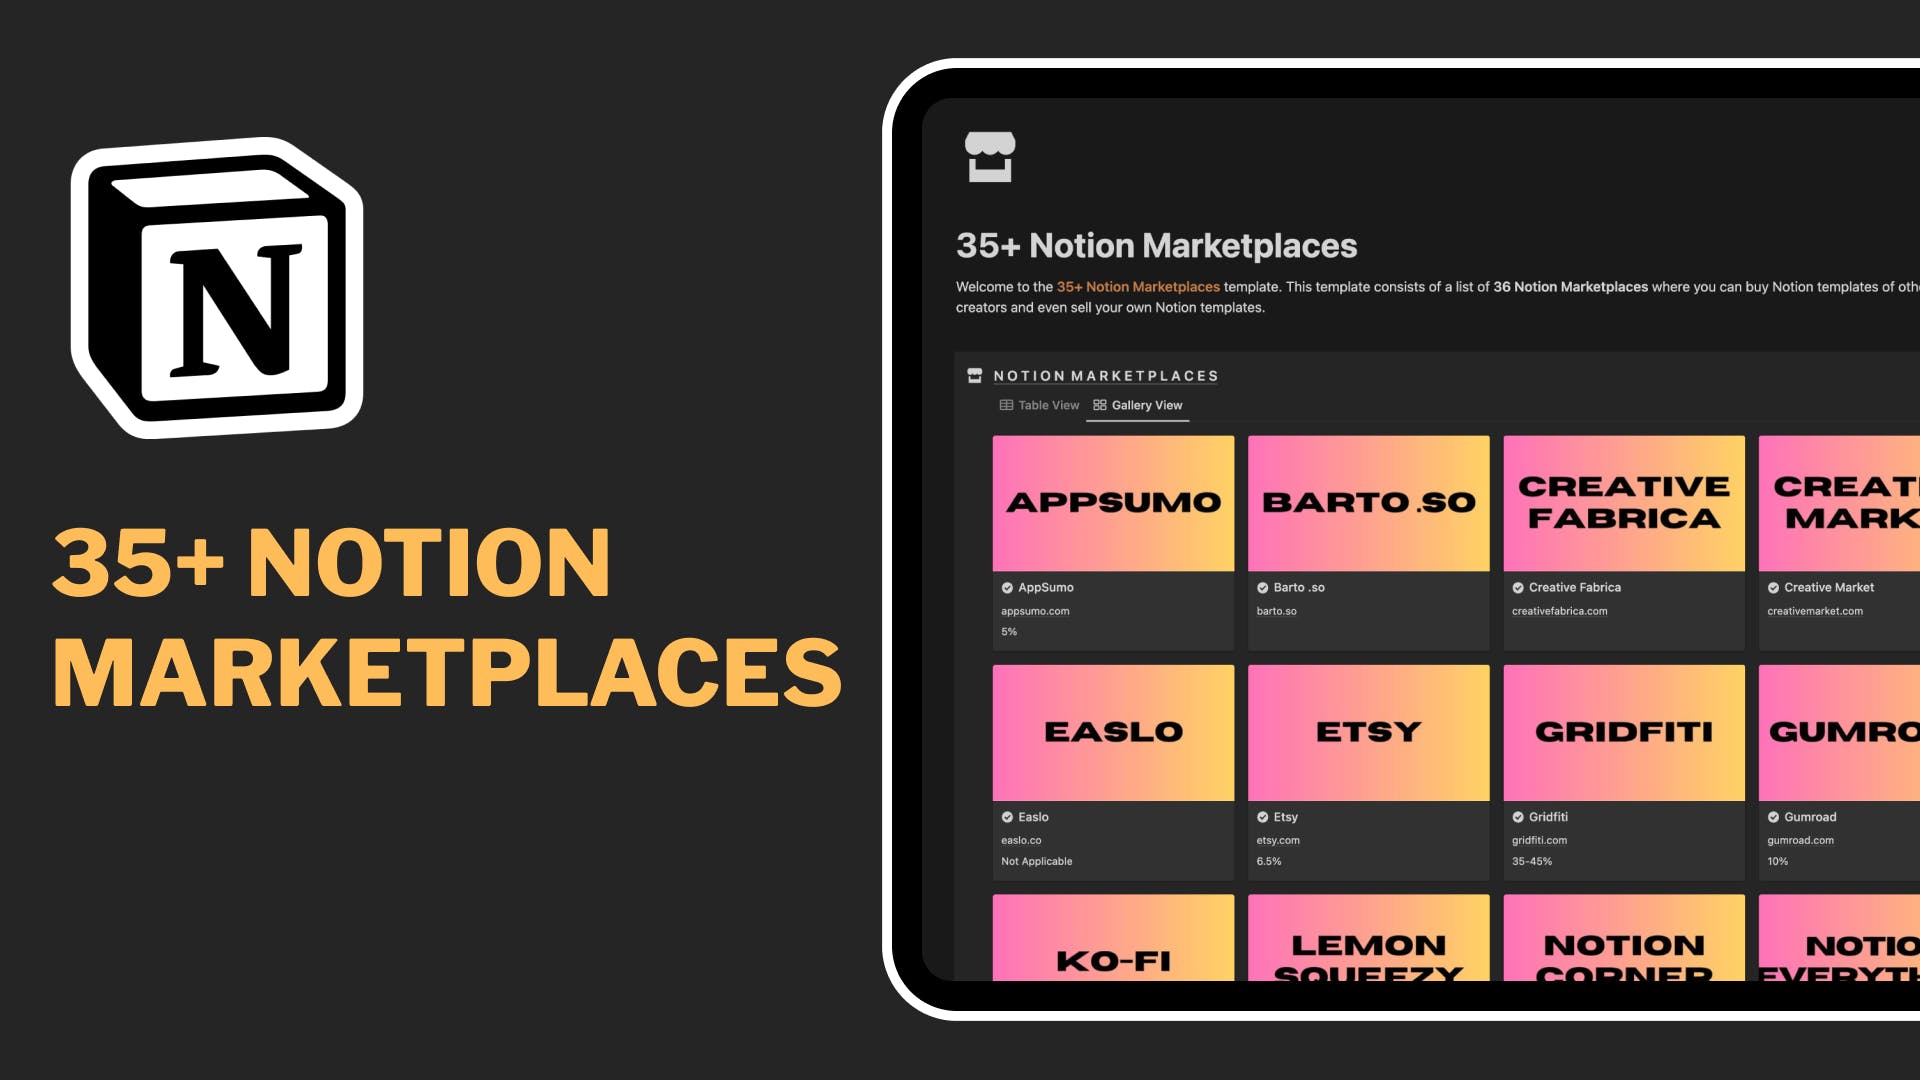 35+ Notion Marketplaces media 1